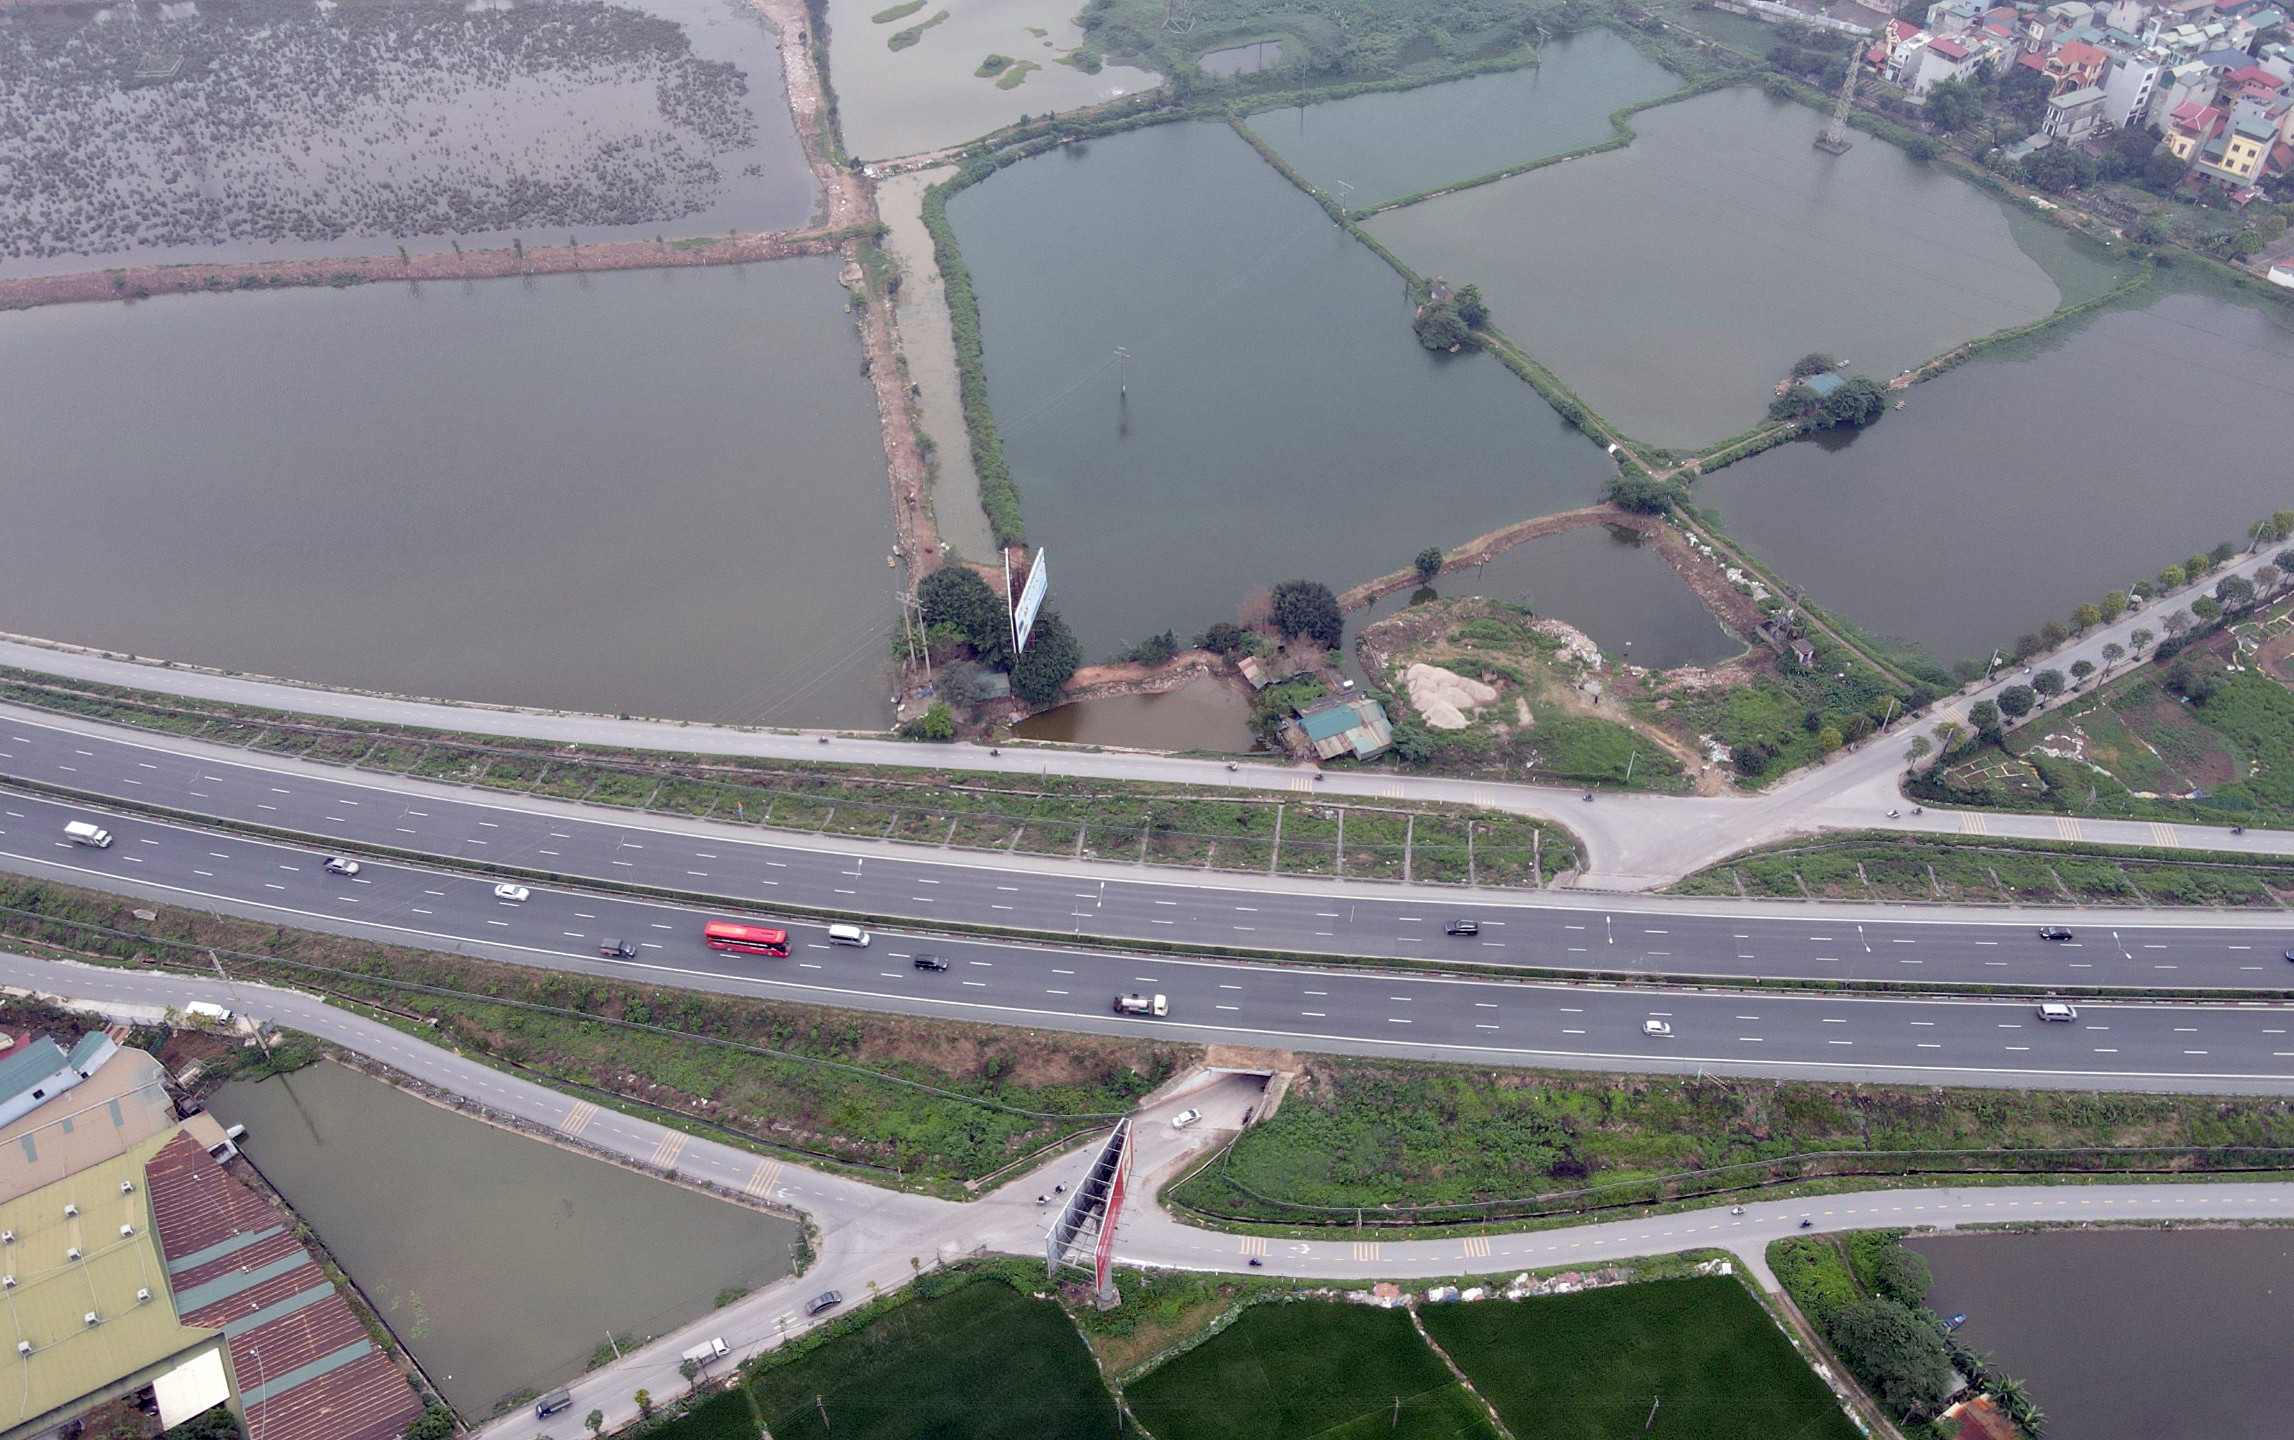 TP Hà Nội dự kiến trong tháng 6/2023 sẽ khởi công dự án đầu tư xây dựng đường kết nối cao tốc Pháp Vân - Cầu Giẽ với Vành đai 3 và đường 70. Điểm đầu tuyến đường nằm ở Vành đai 3, nối với cao tốc Pháp Vân - Cầu Giẽ và kết thúc ở đường 70.